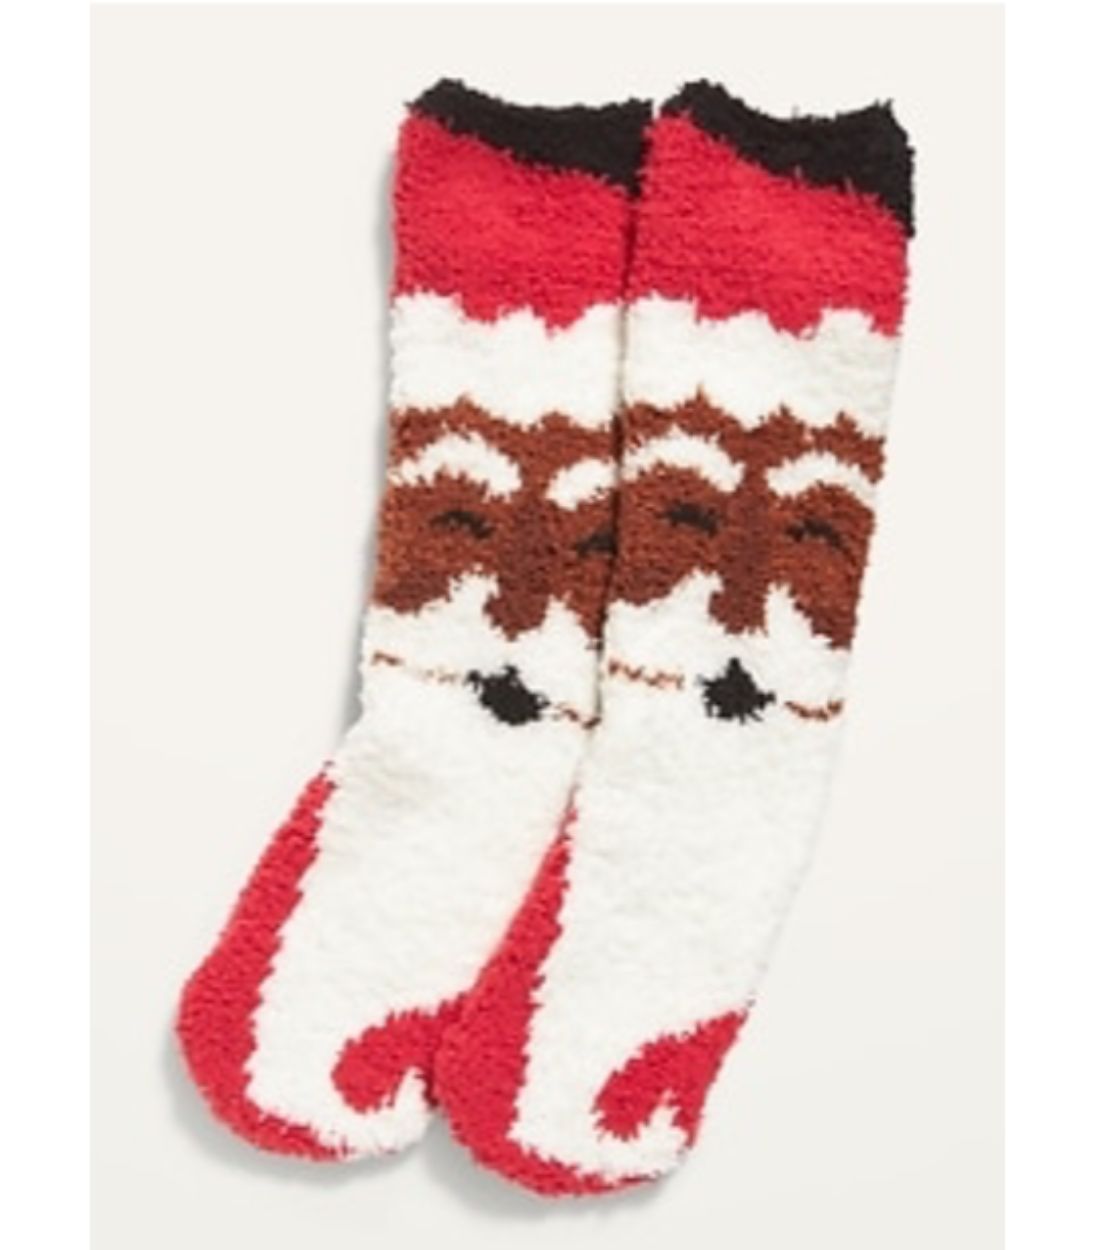 Black Santa socks from Old Navy